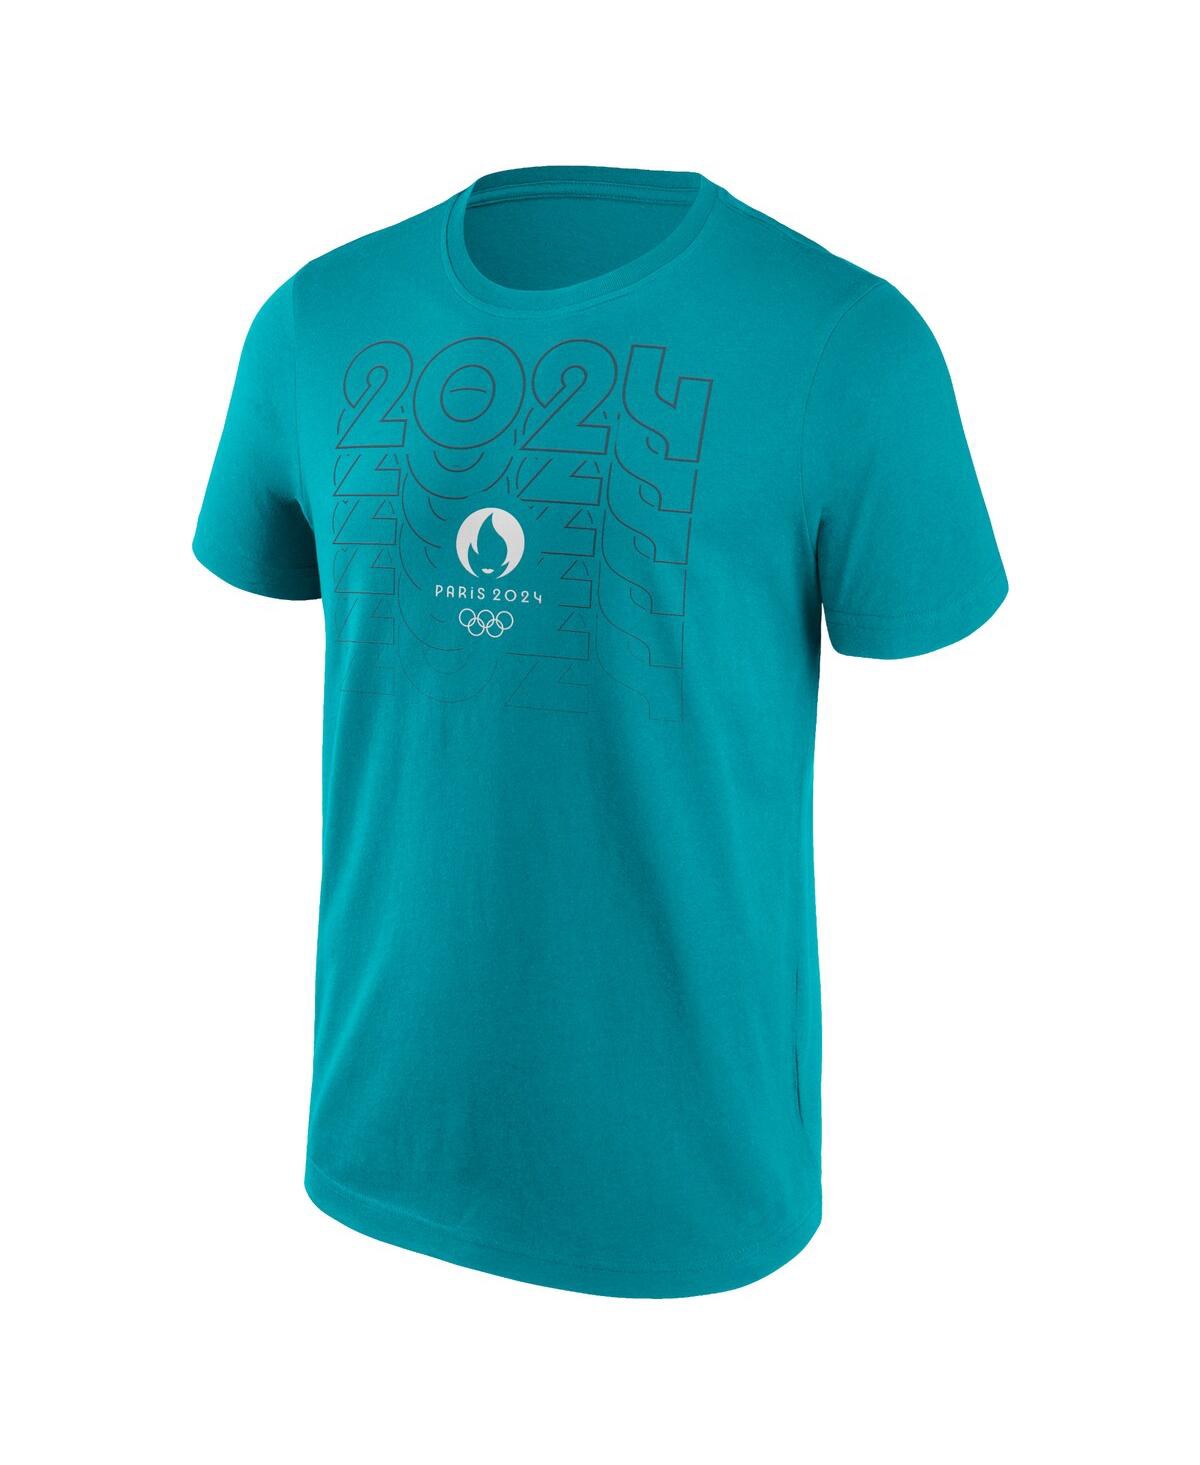 Shop Fanatics Branded Men's Aqua Paris 2024 Repeat Outline T-shirt